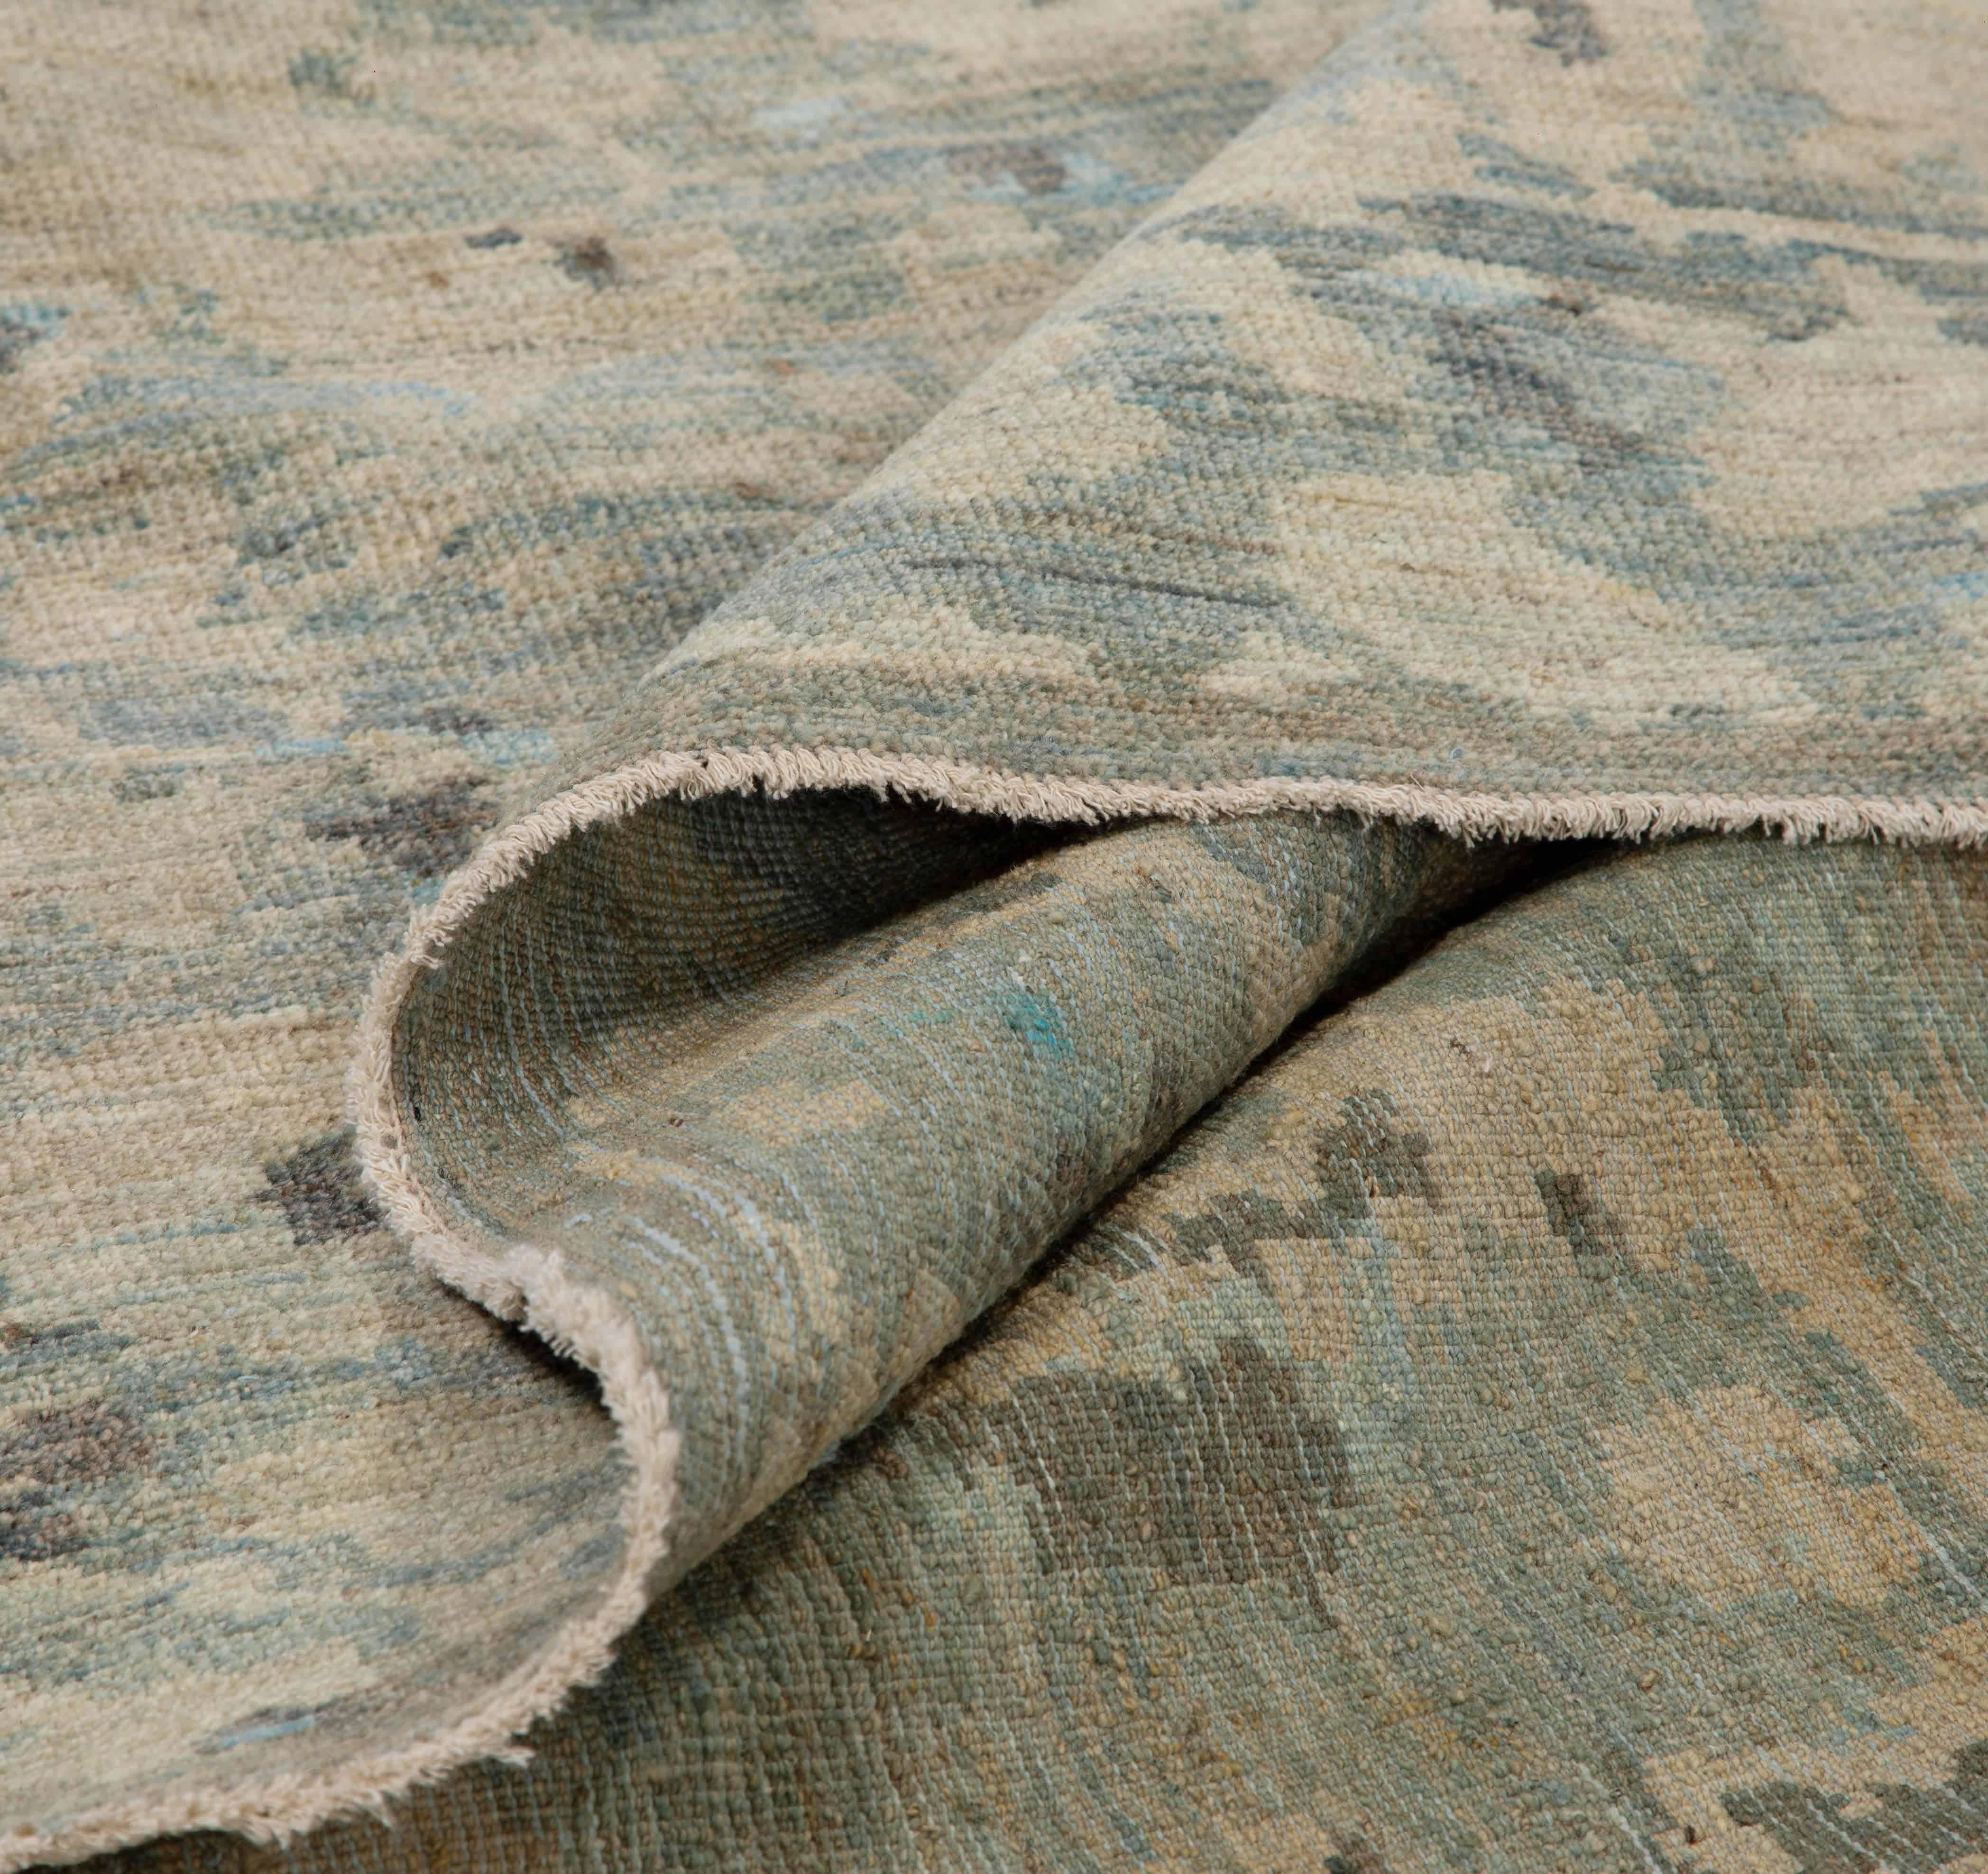 Handgefertigter türkischer Teppich aus hochwertiger Schafwolle, gefärbt mit umweltfreundlichen Pflanzenfarben, die nachweislich sicher für Menschen und Haustiere sind. Es ist ein einzigartiges Sultanabad-Design, das eine wunderschöne Mischung aus